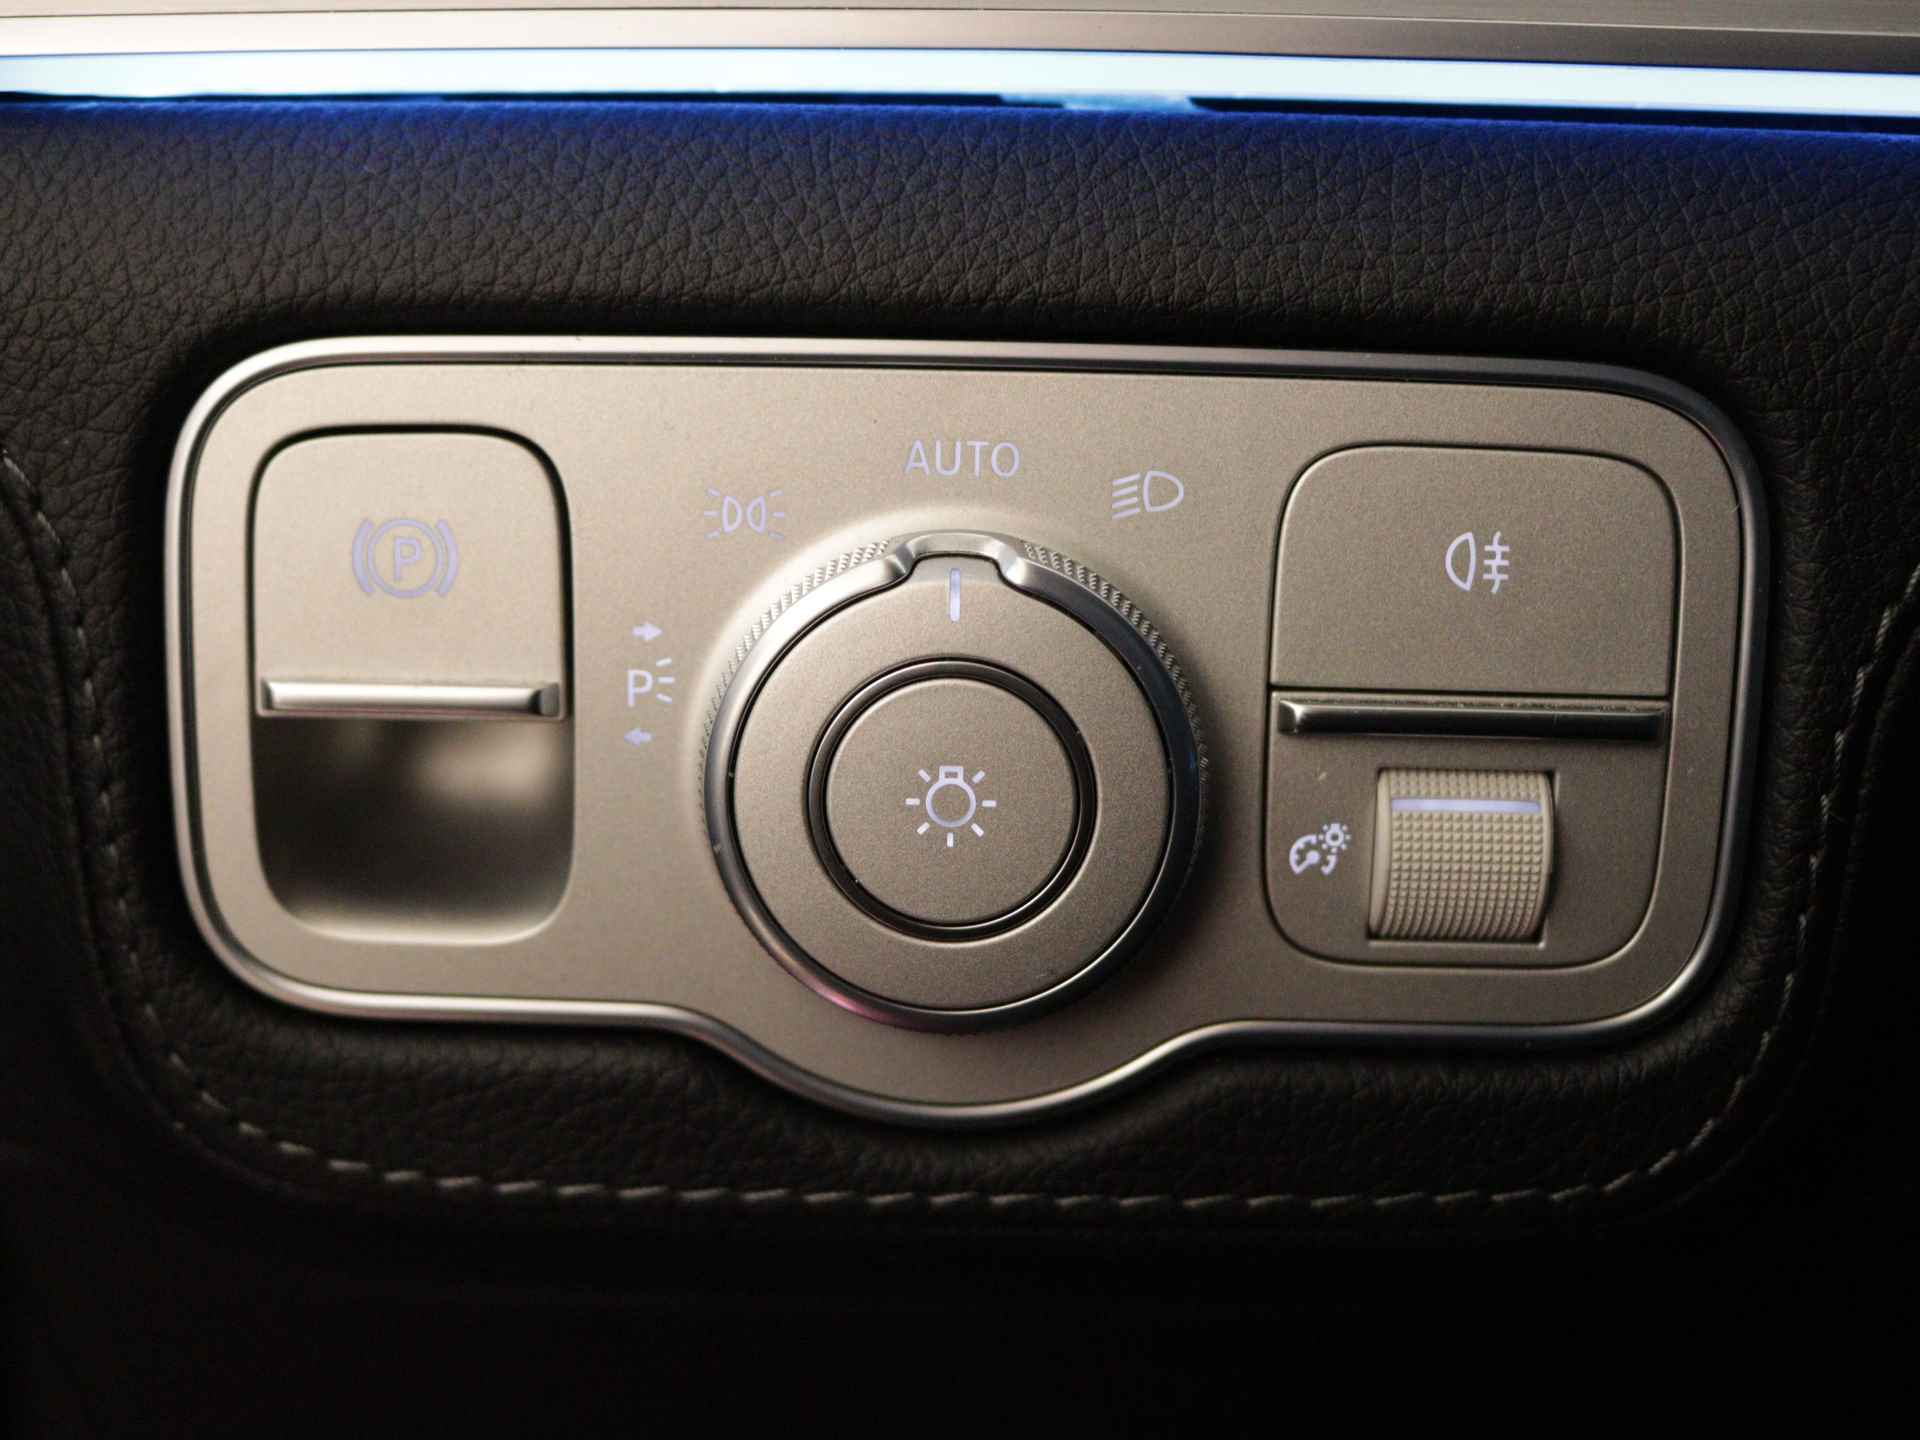 Mercedes-Benz GLE 350 e 4-MATIC AMG Nightpakket Limited 5 spaaks lichtmetalen velgen | Trekhaak | Airmatic | Treeplanken | Alarm klasse 3 |  Augmented Reality | sfeerverlichting | DAB | Parking support | inclusief 24 maanden MB Certified garantie voor europa - 33/45